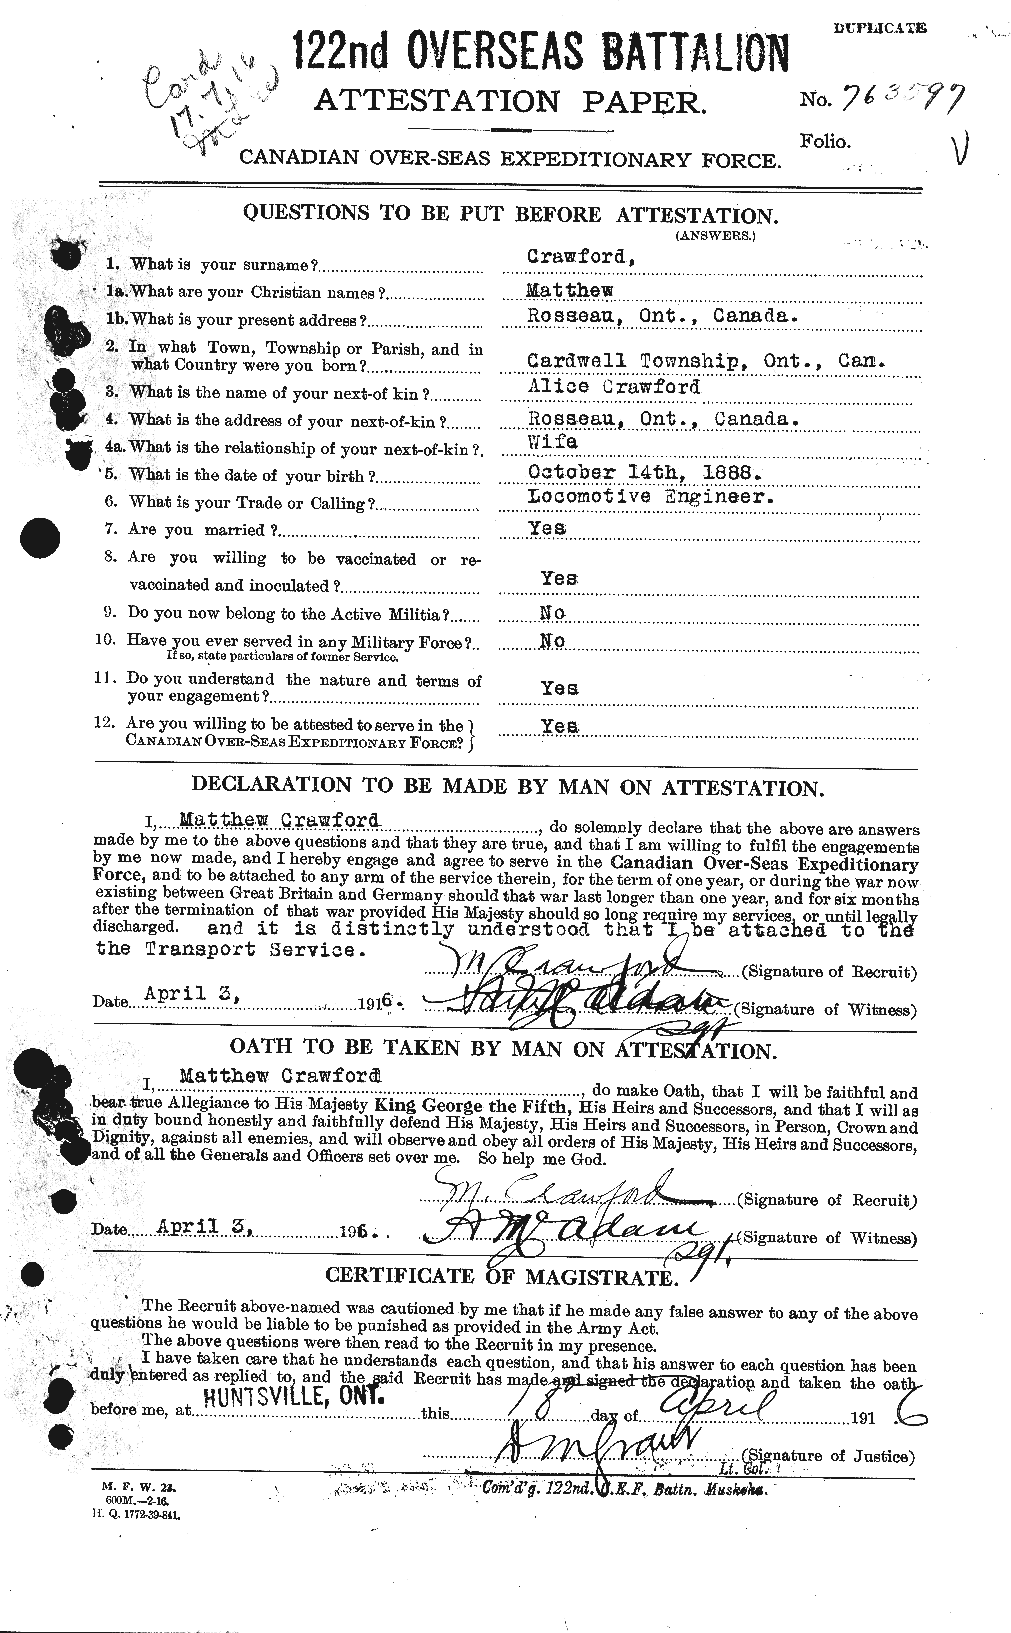 Dossiers du Personnel de la Première Guerre mondiale - CEC 061781a